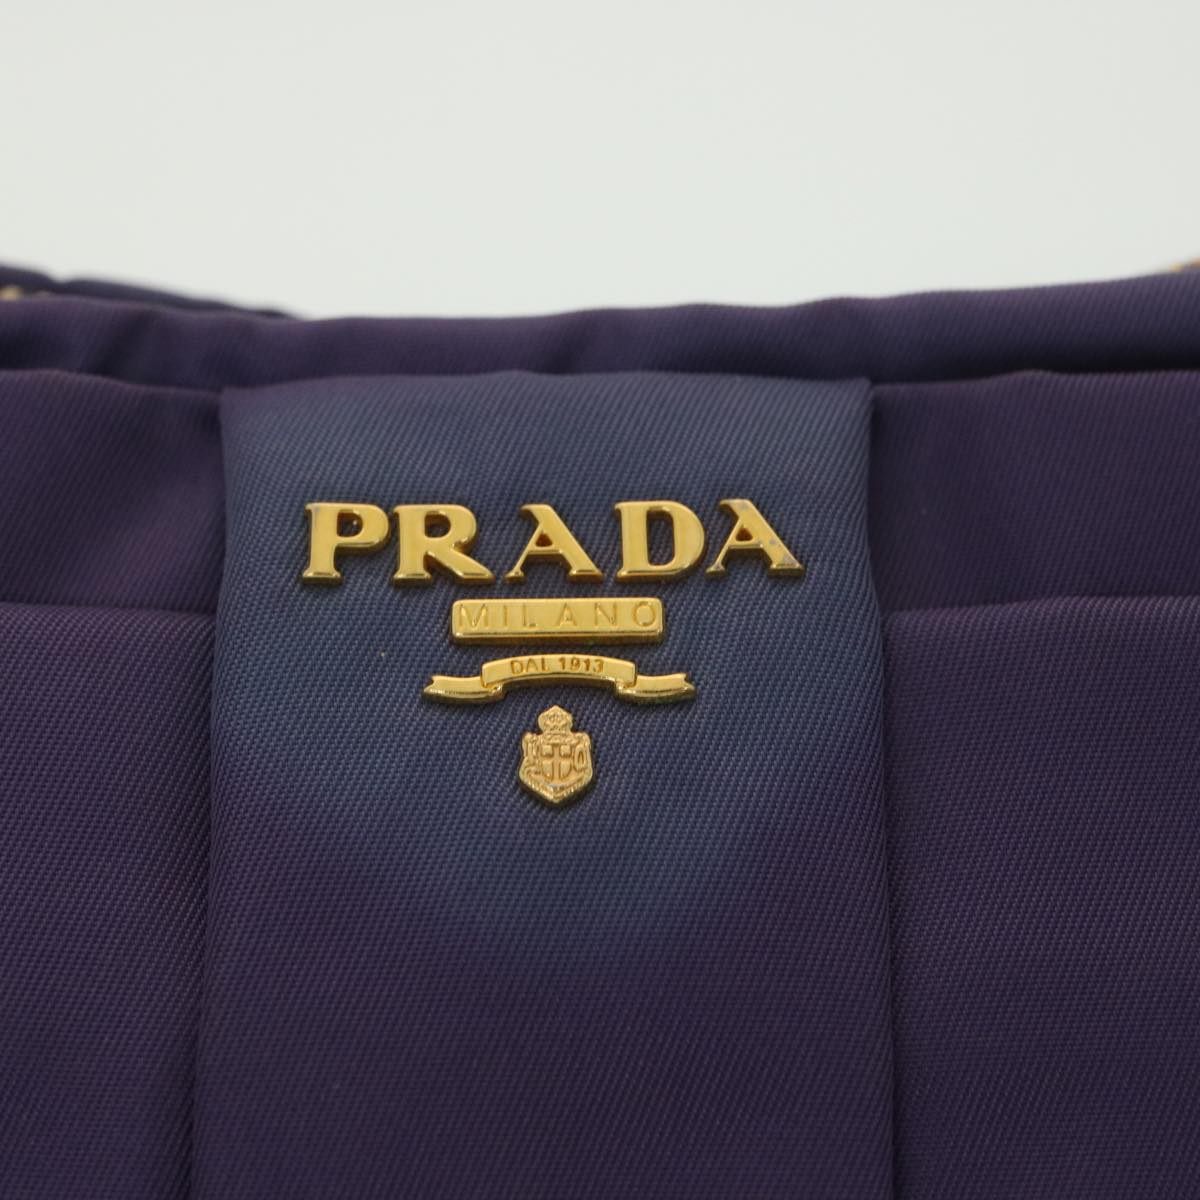 PRADA Accessory Pouch Nylon Purple Auth 38100